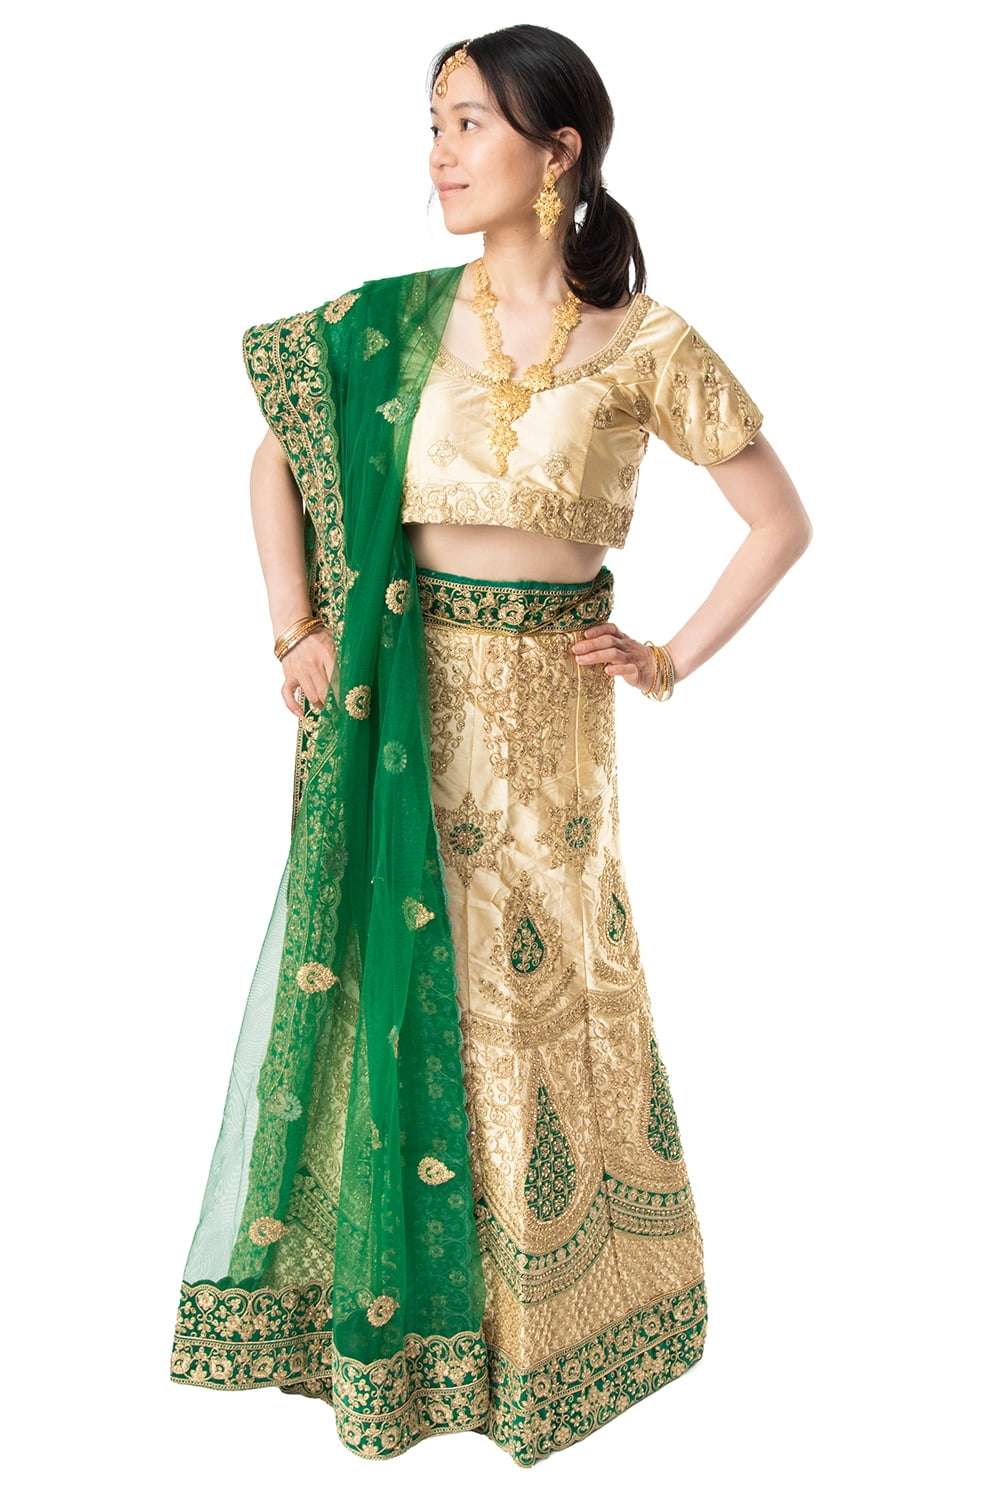 【送料無料】 【1点物】インドのレヘンガドレスセット ホワイト×グリーン / パーティードレス コスプレ ウェディングドレス 民族衣装 T